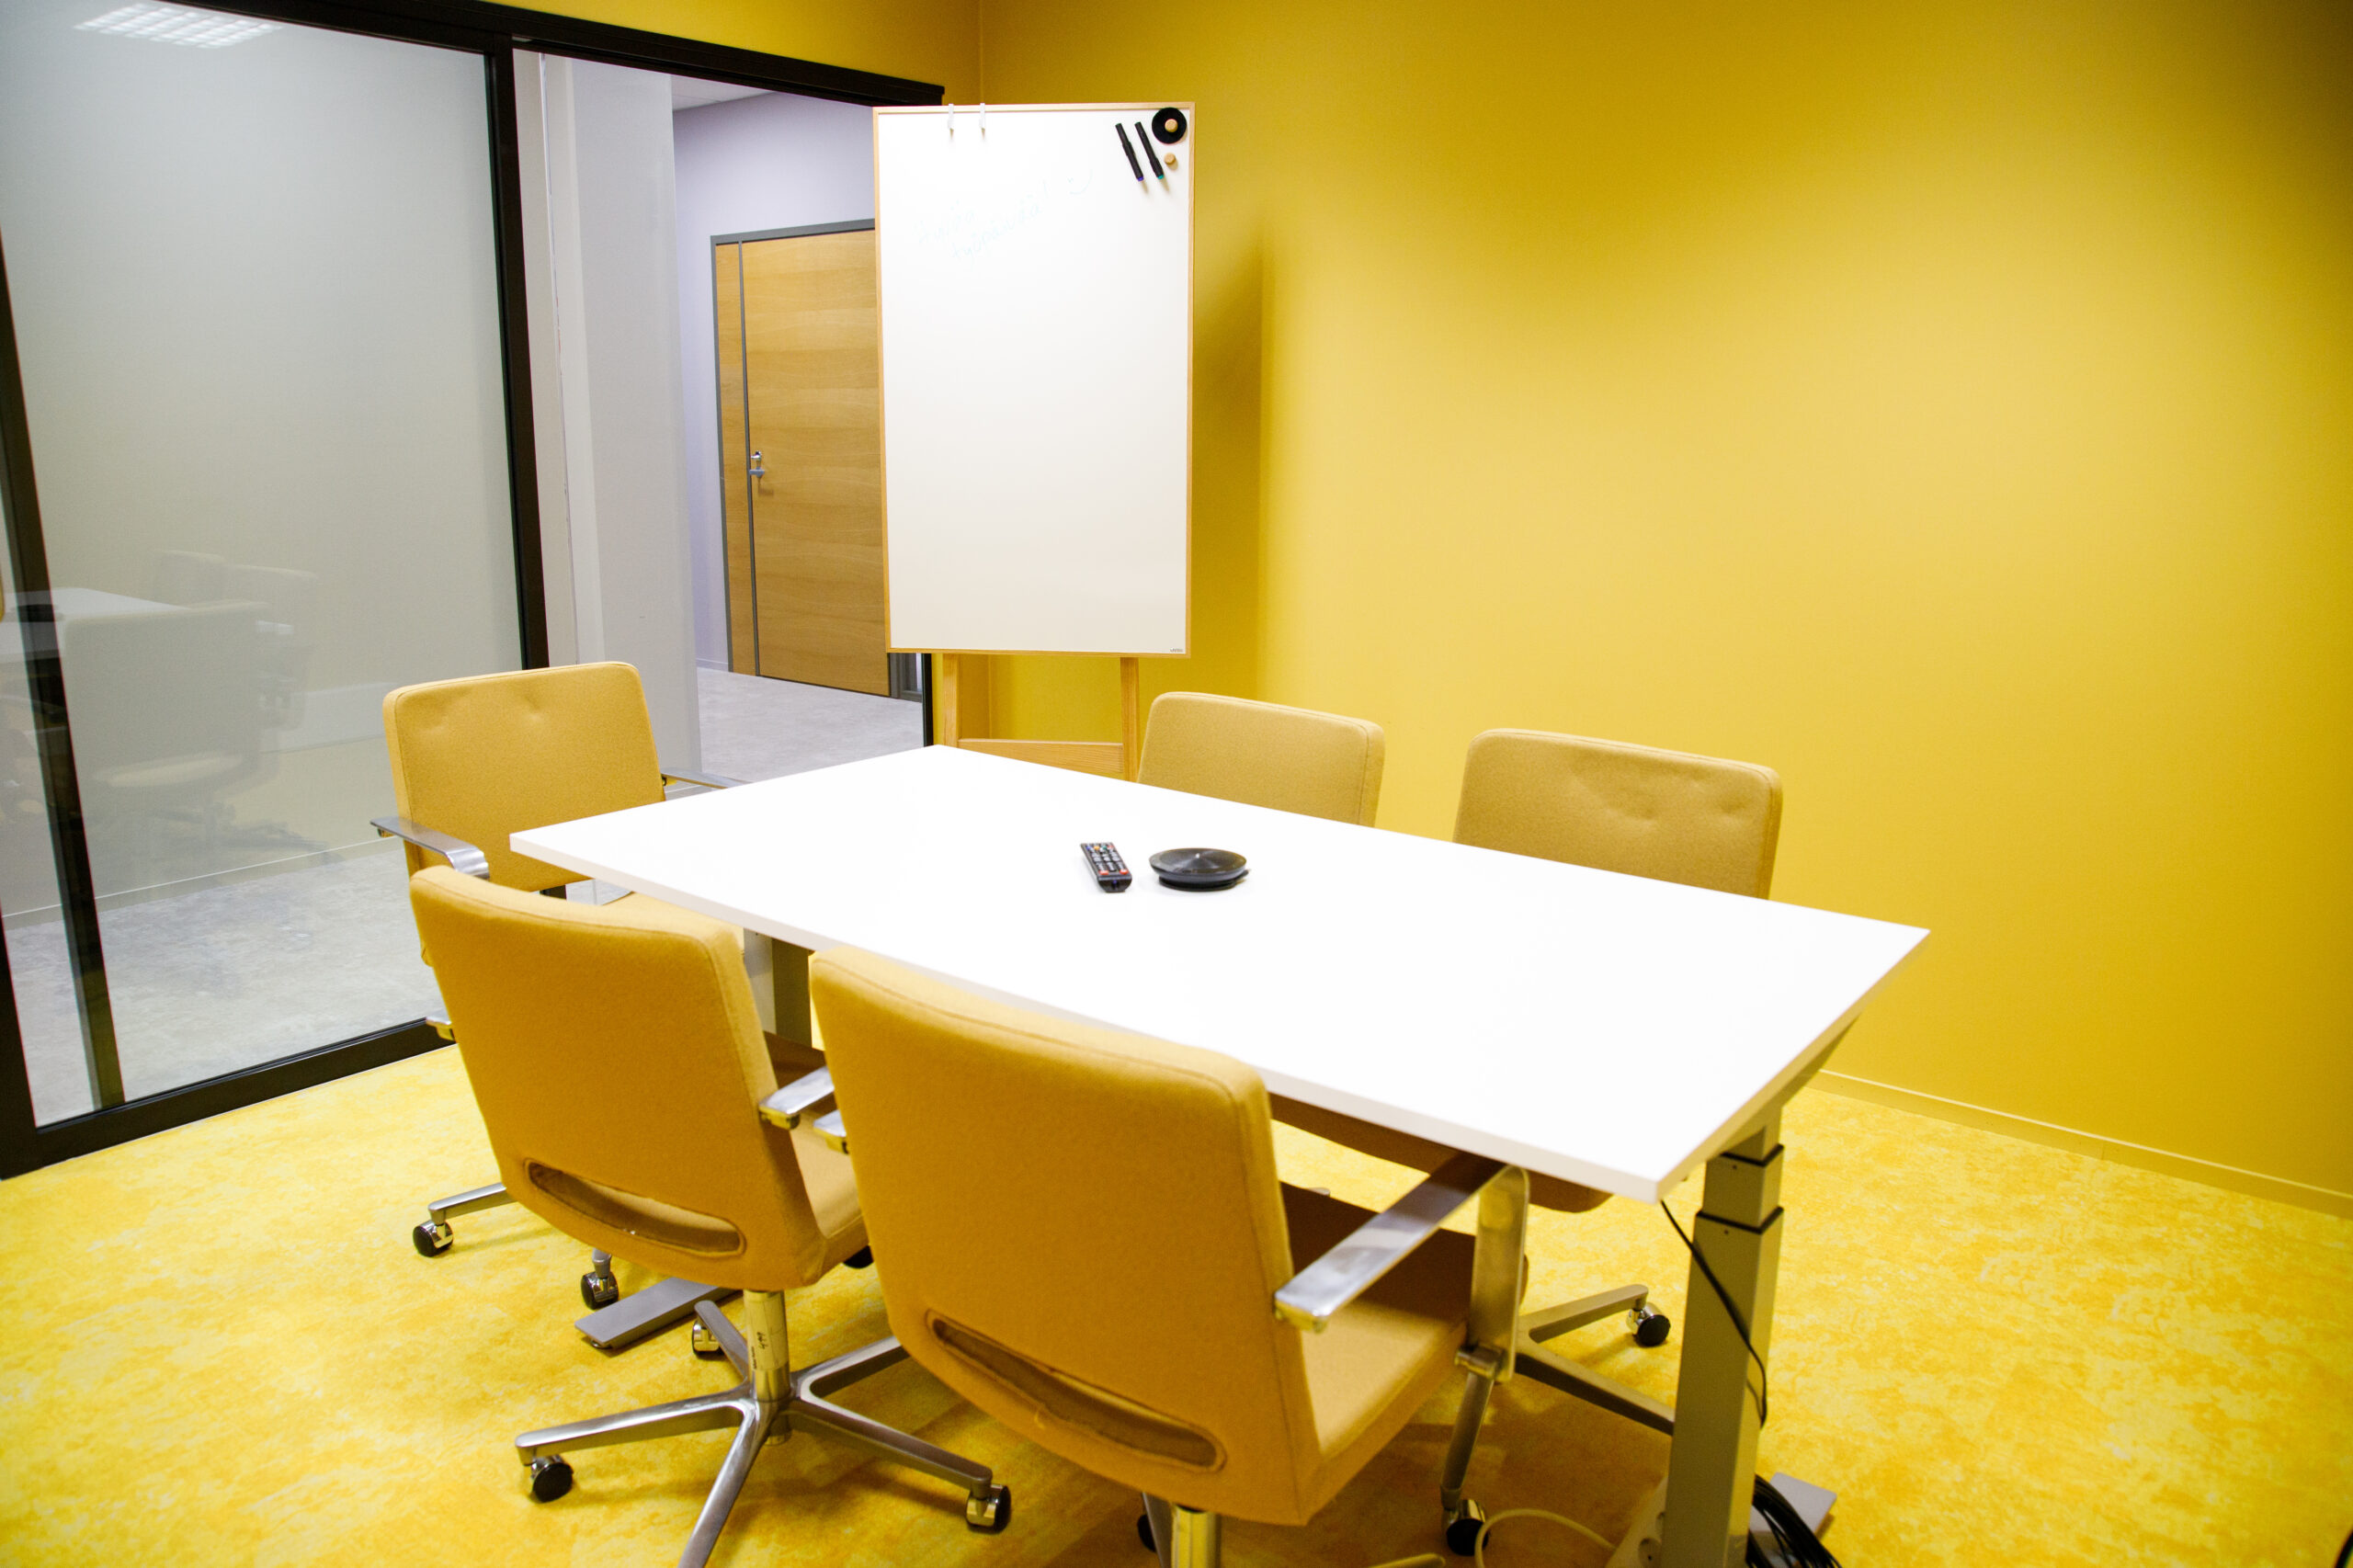 Tässä kuvassa on yksi Meitan toimiston neuvotteluhuoneista, jossa on pöytä, viisi tuolia sekä tussitaulu